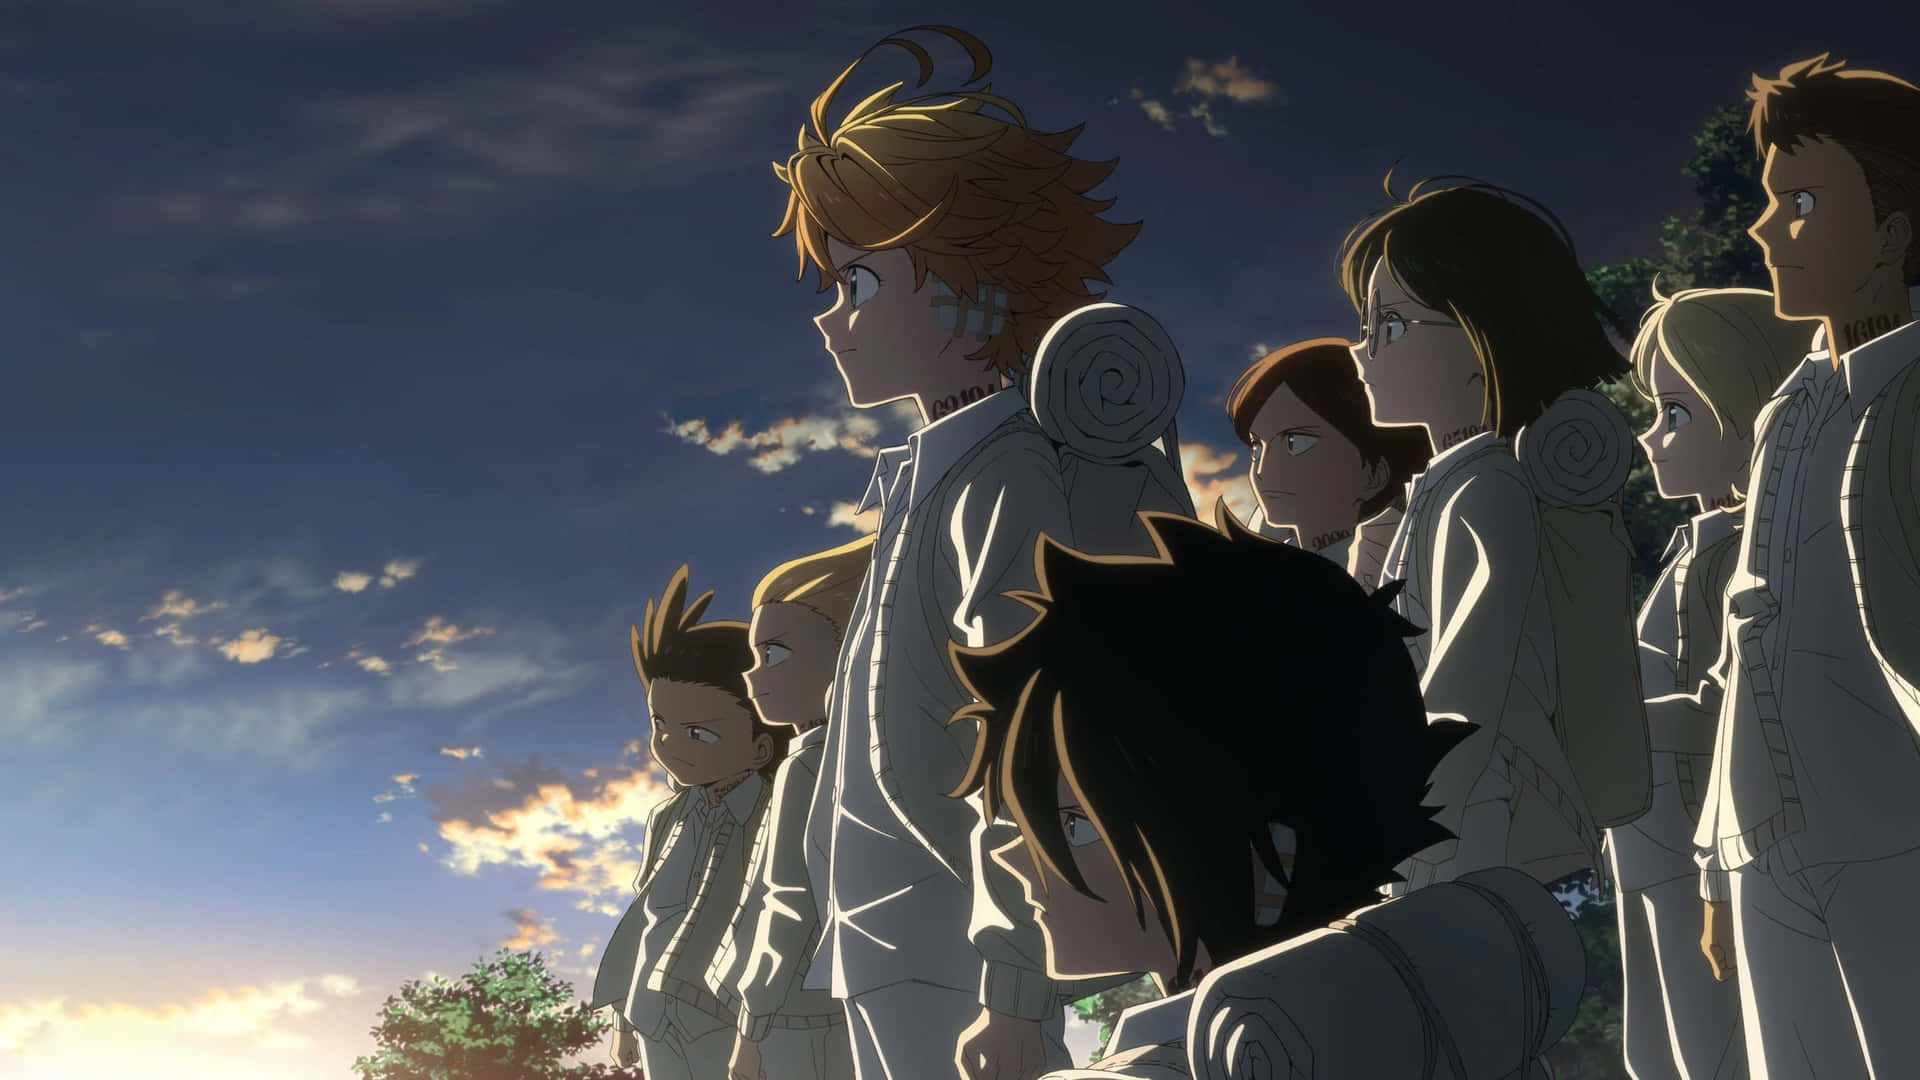 Rayfrån Anime-serien The Promised Neverland. Wallpaper